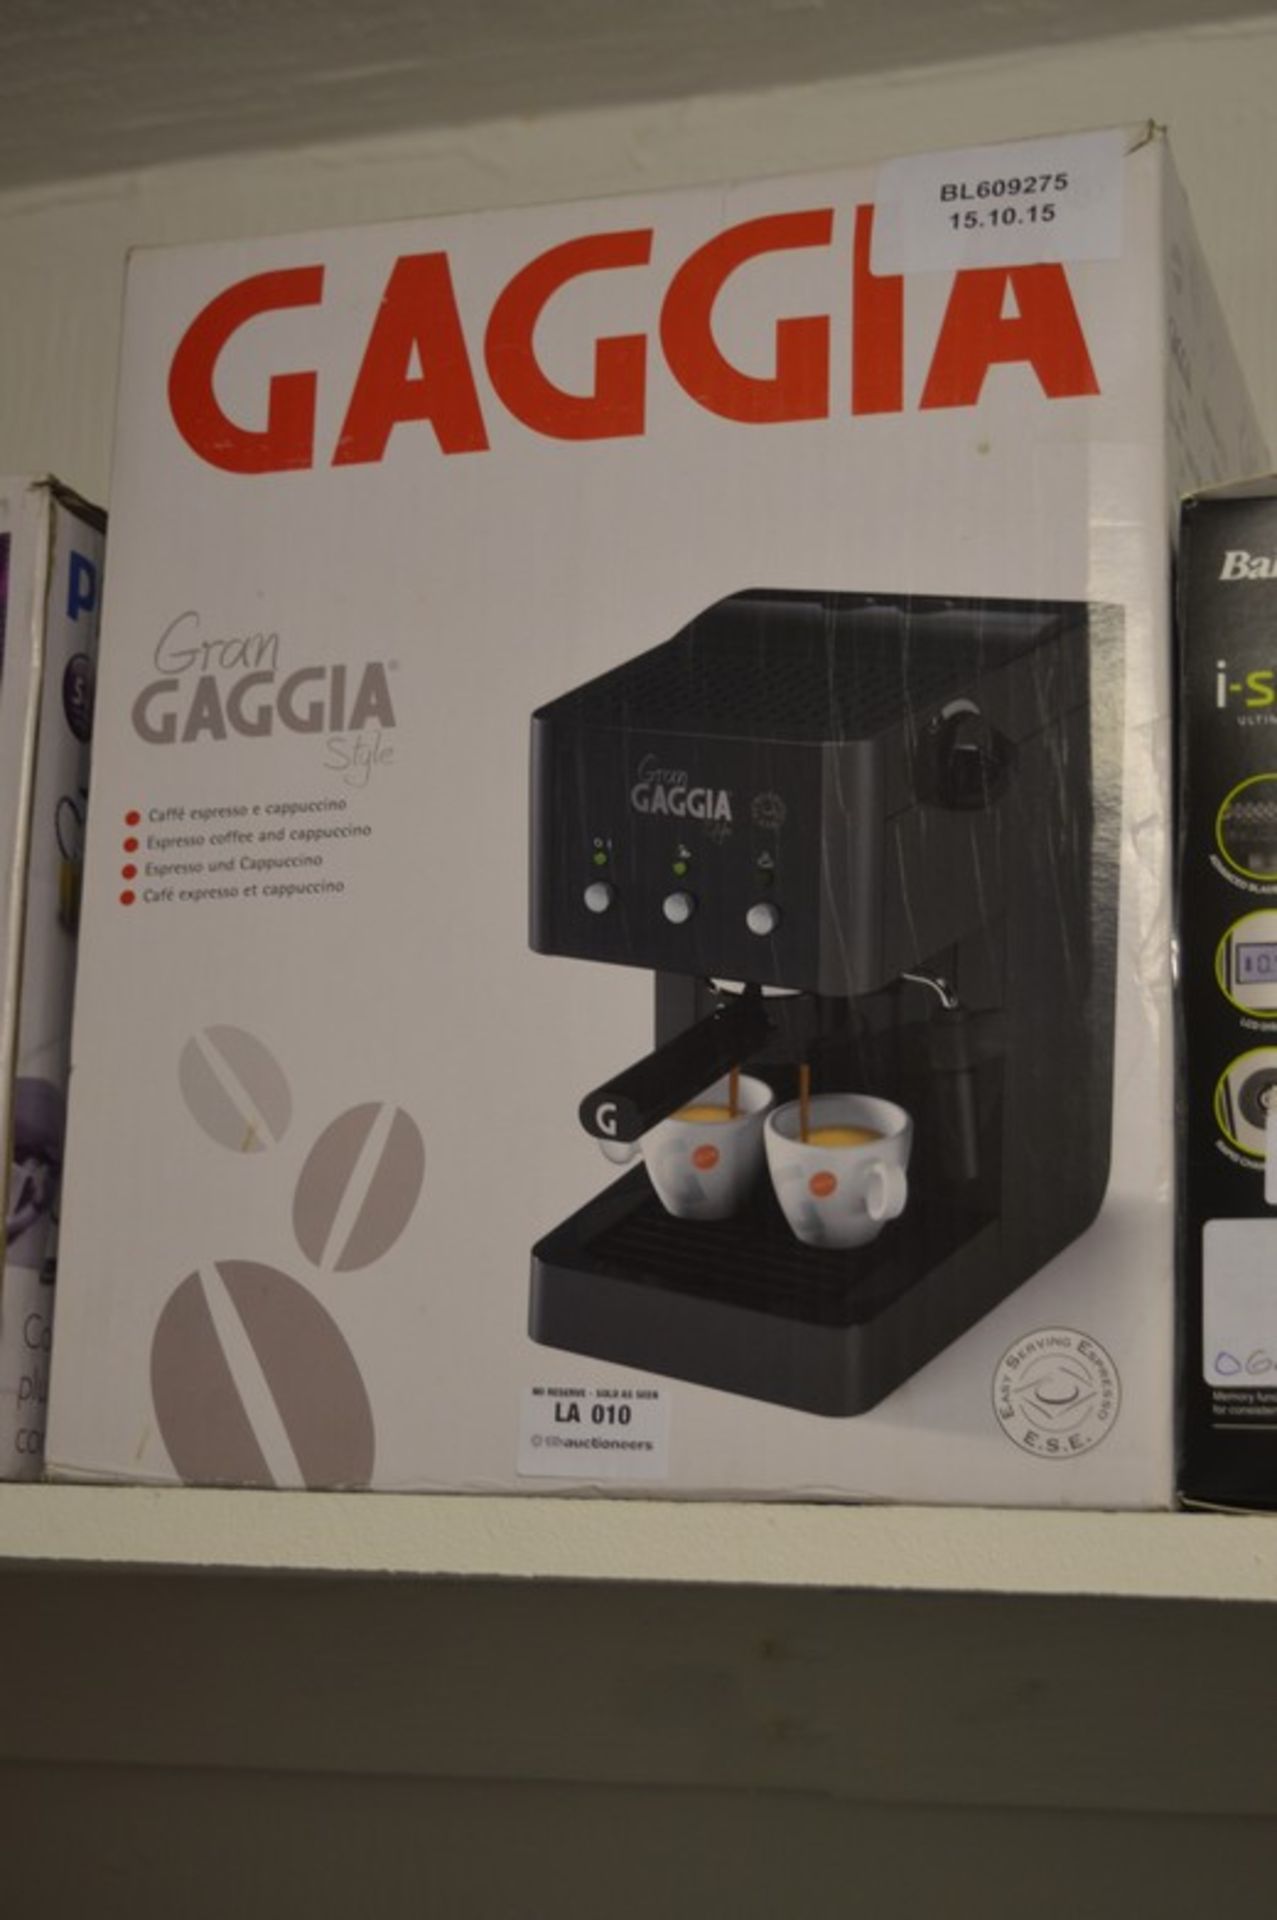 BOXED GRAND GAGGIA STYLE CAFÉ ESPRESSO AND CAPPUCCINO MAKER RRP £200.00 15/10/15